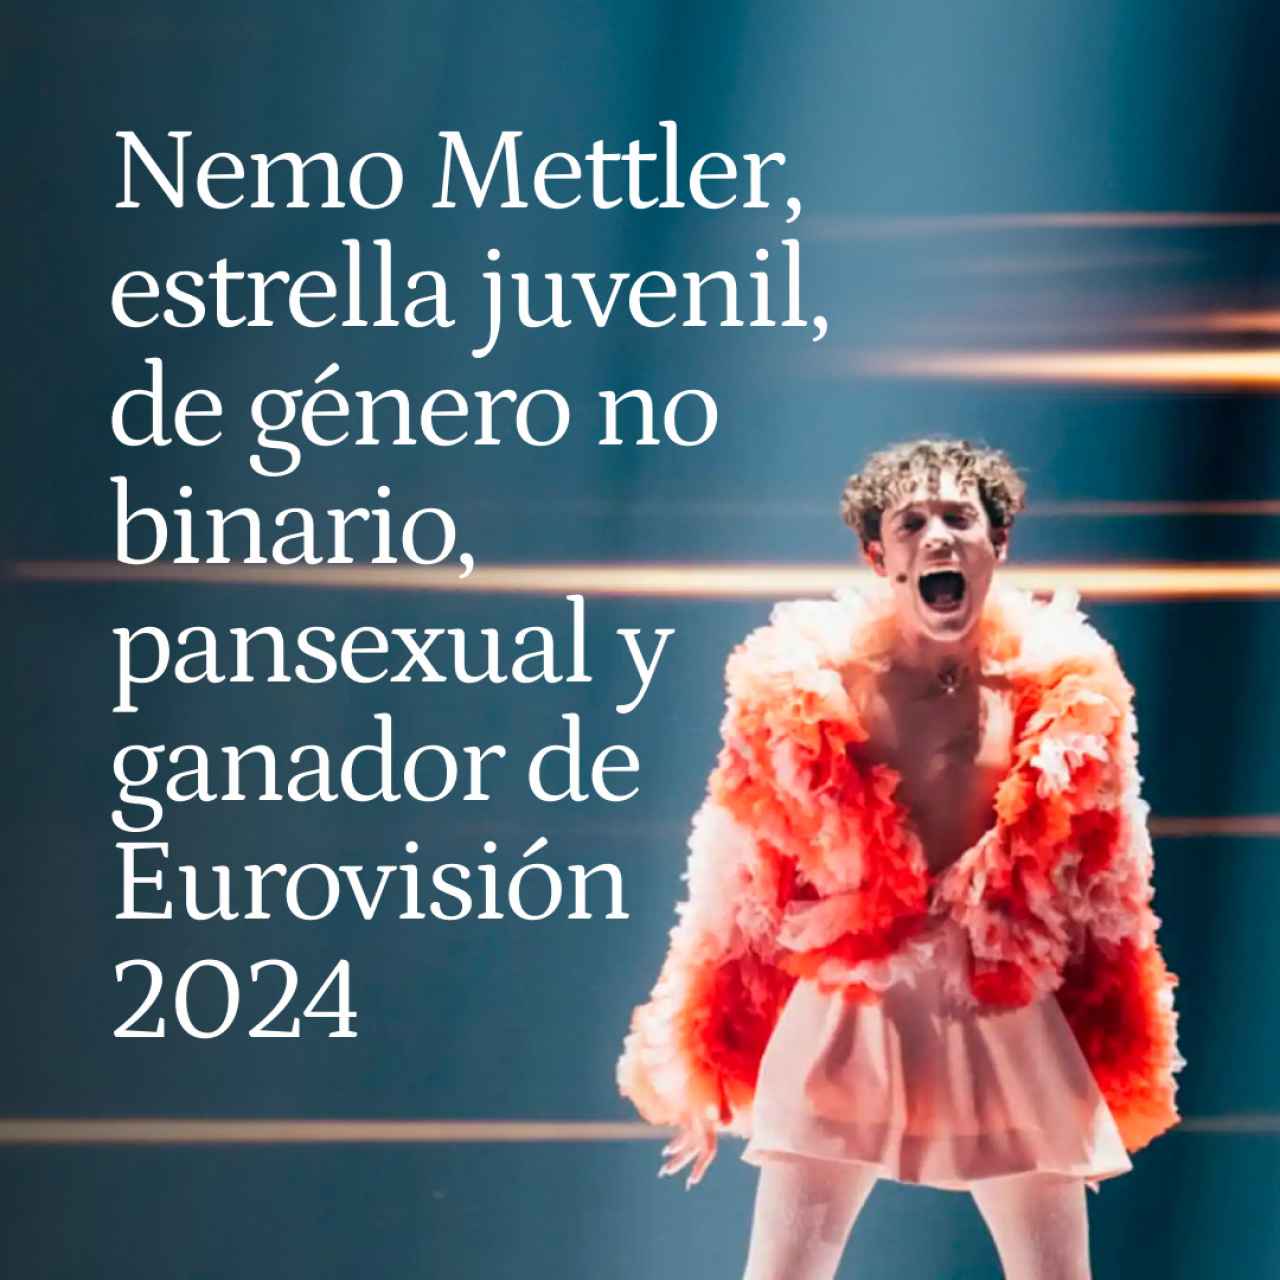 Estrella juvenil, de género no binario y pansexual: todo sobre Nemo Mettler, el suizo ganador de Eurovisión 2024